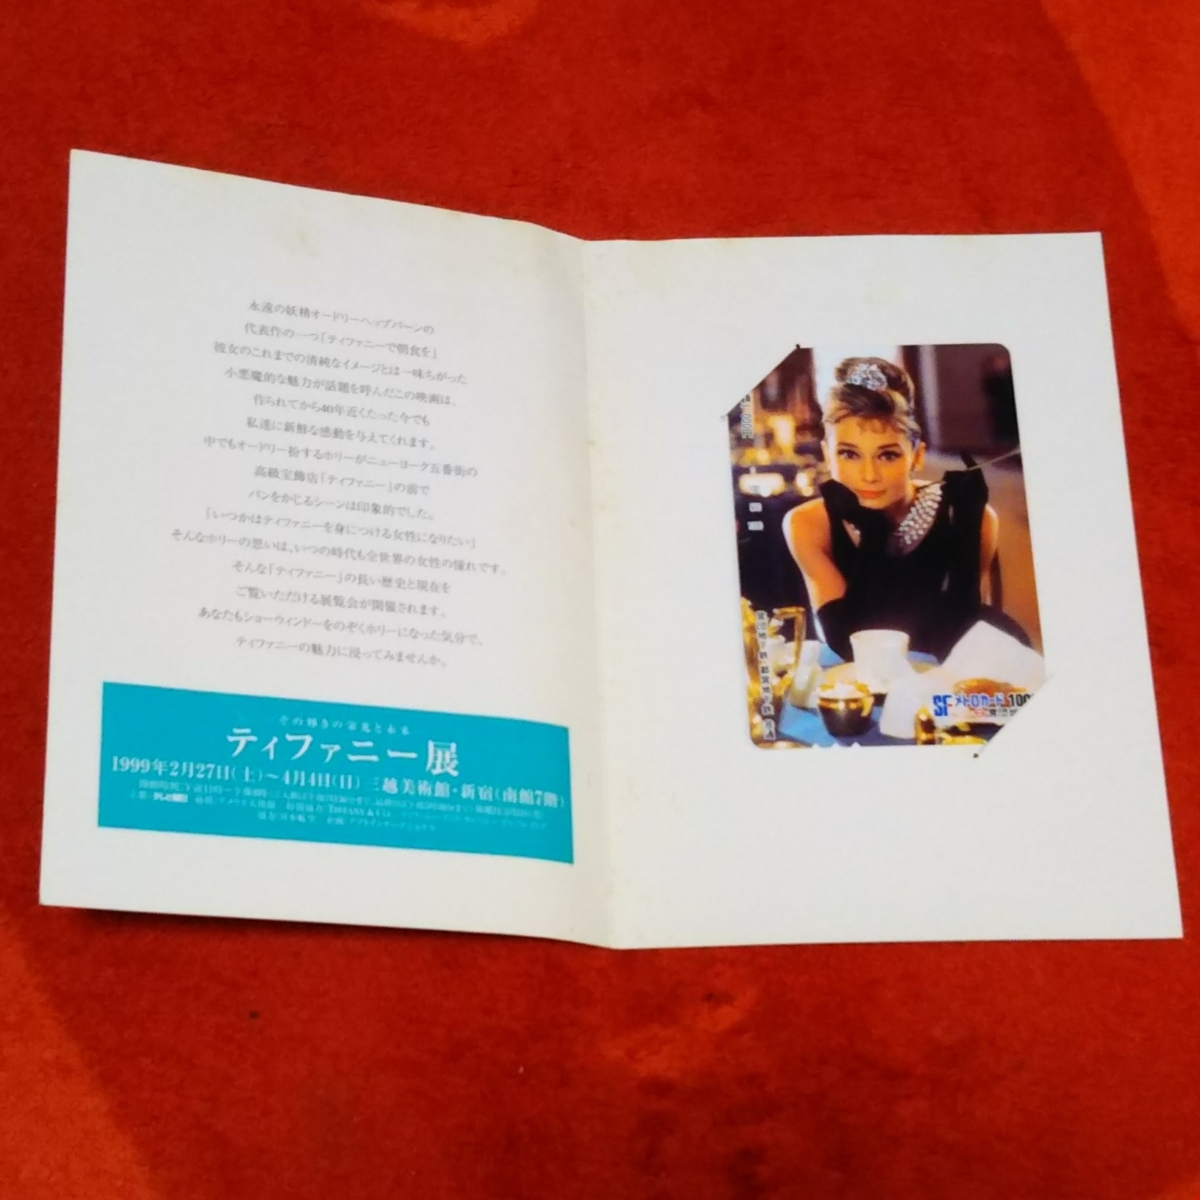 オードリーへップバーン『ティファニーで朝食を』1999年新宿三越美術館『ティファニー展』グッズ メトロカード☆コレクターズアイテム_画像4